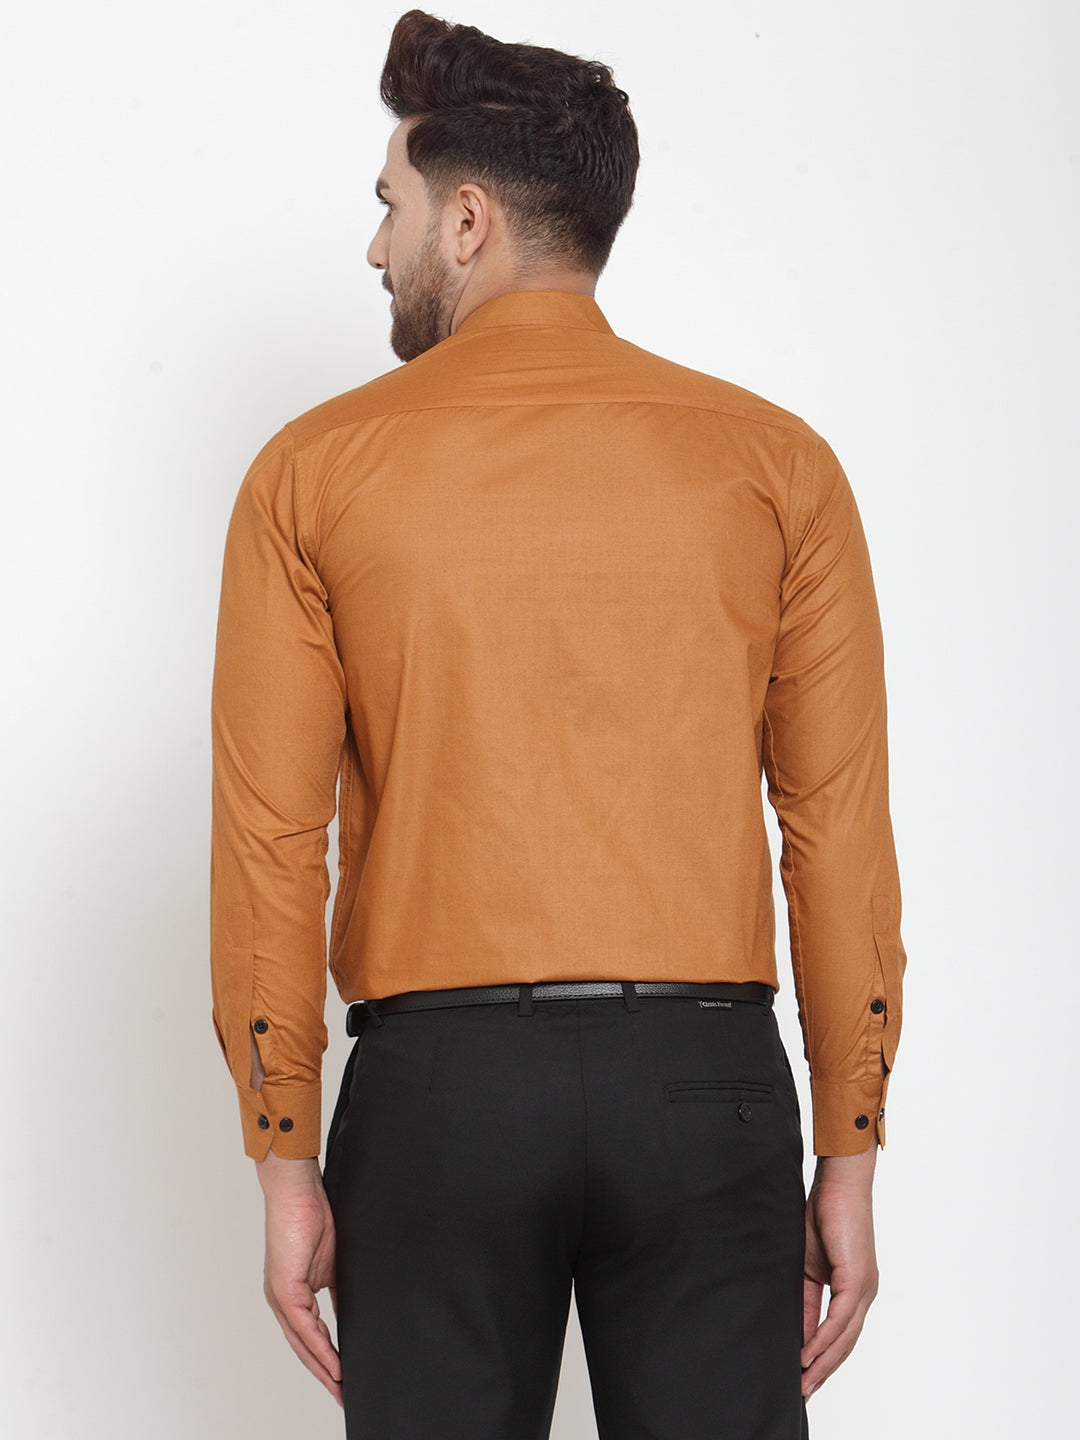 Jainish Rust Men's Cotton Solid Mandarin Collar Formal Shirts